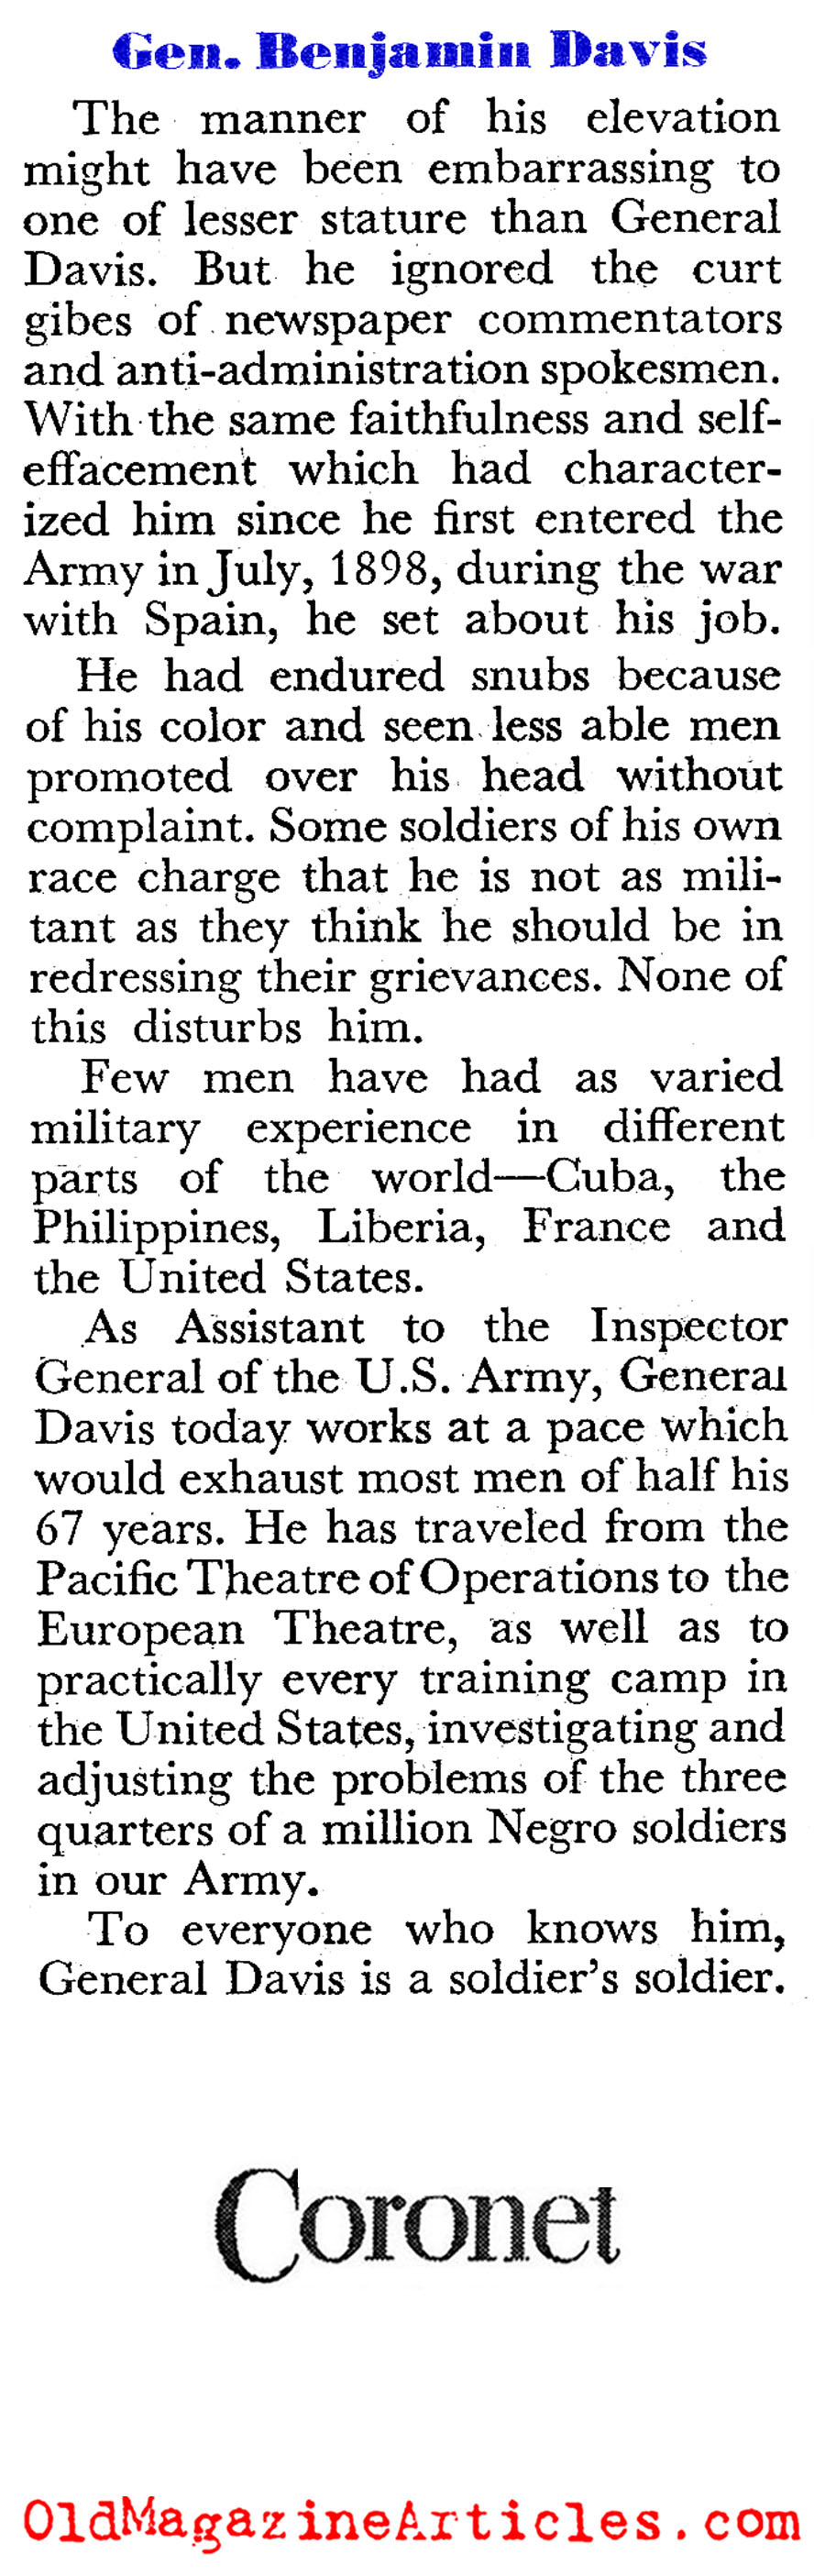 U.S. General Benjamin Oliver Davis (Coronet Magazine, 1944)